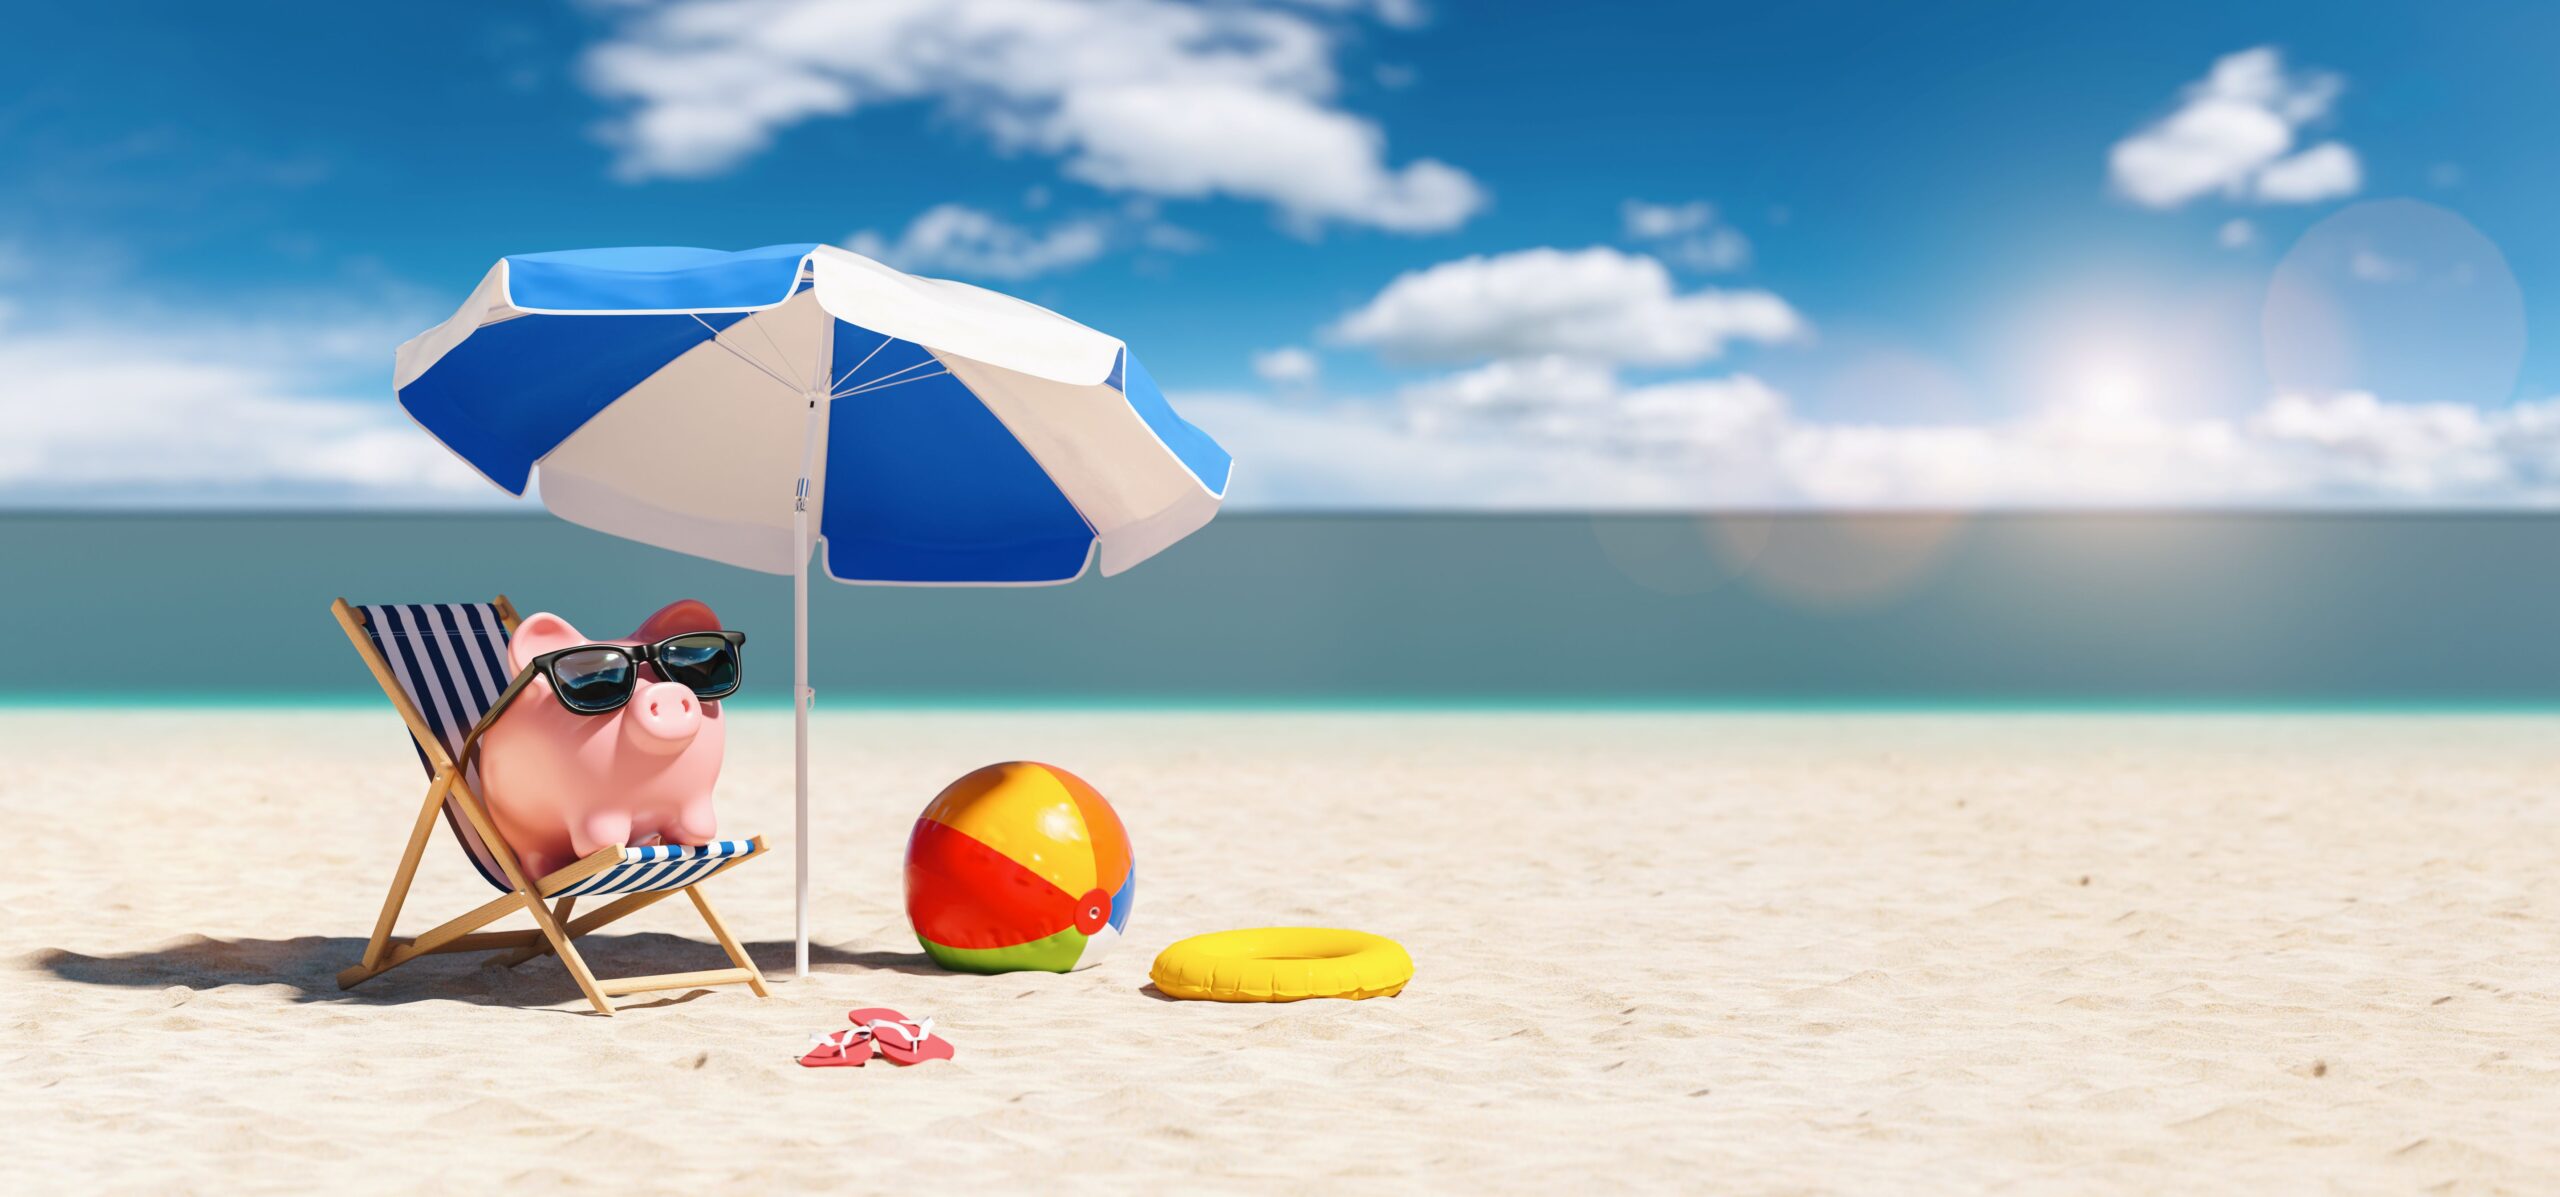 A piggy bank sits on the beach under an umbrella. 